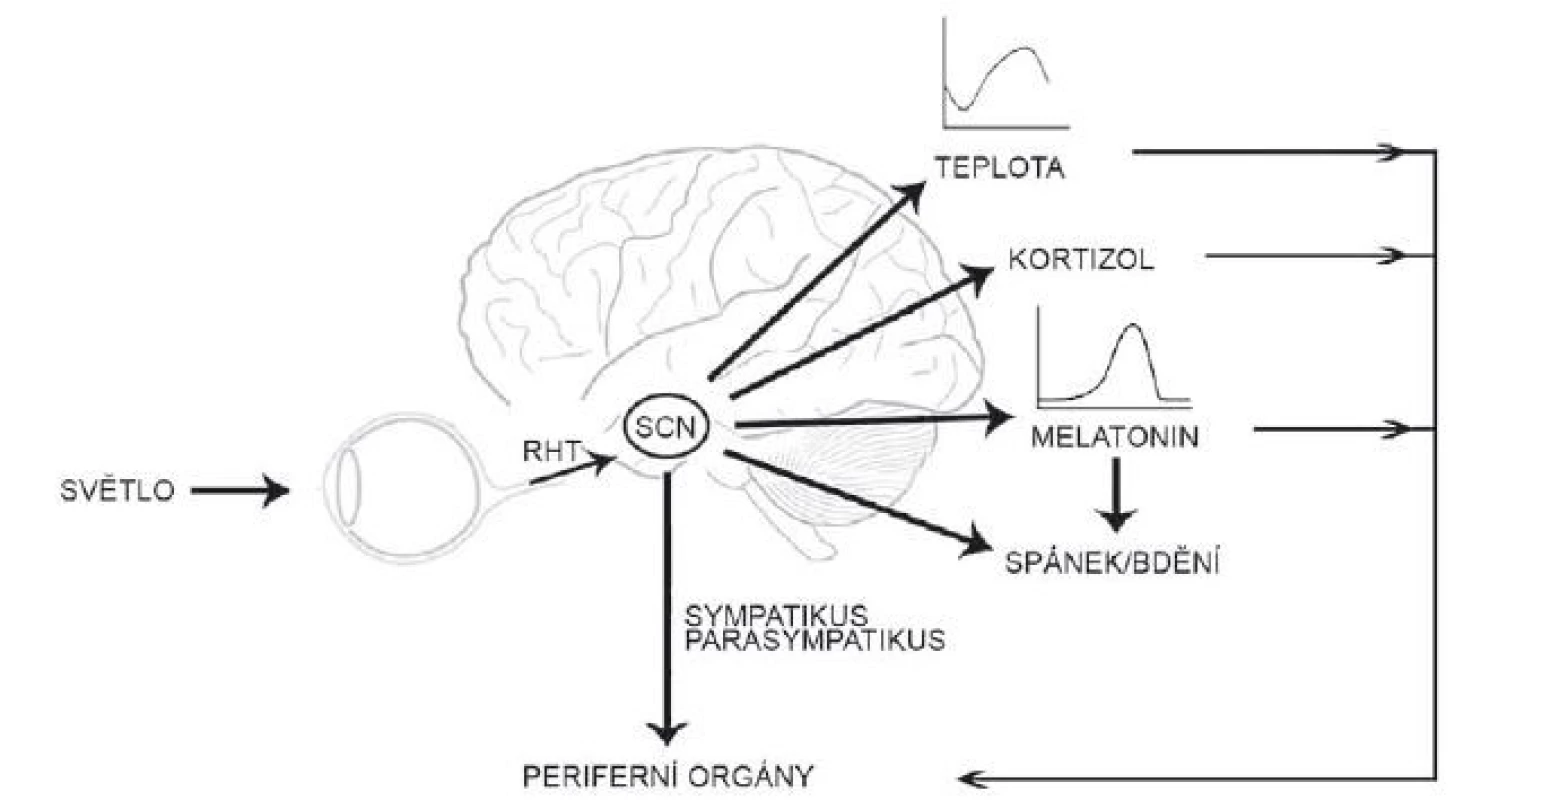 Suprachiasmatické jádro získává informace o světle ze sítnice oka a synchronizuje rytmy v tělesné teplotě, produkci melatoninu
a kortizolu, reguluje spánek a přímo i nepřímo fyziologii periferních orgánů.
RHT – retinohypotalamický trakt; SCN – suprachiasmatická jádra<br>
Fig. 2. The suprachiasmatic nucleus receives the photic information from the retina, synchronizes rhythms in body temperature, melatonin
and cortisol secretion, sleep regulation and regulates the physiology of the peripheral organs both directly and indirectly.
RHT – retinohypothalamic tract; SCN – suprachiasmatic nucleus